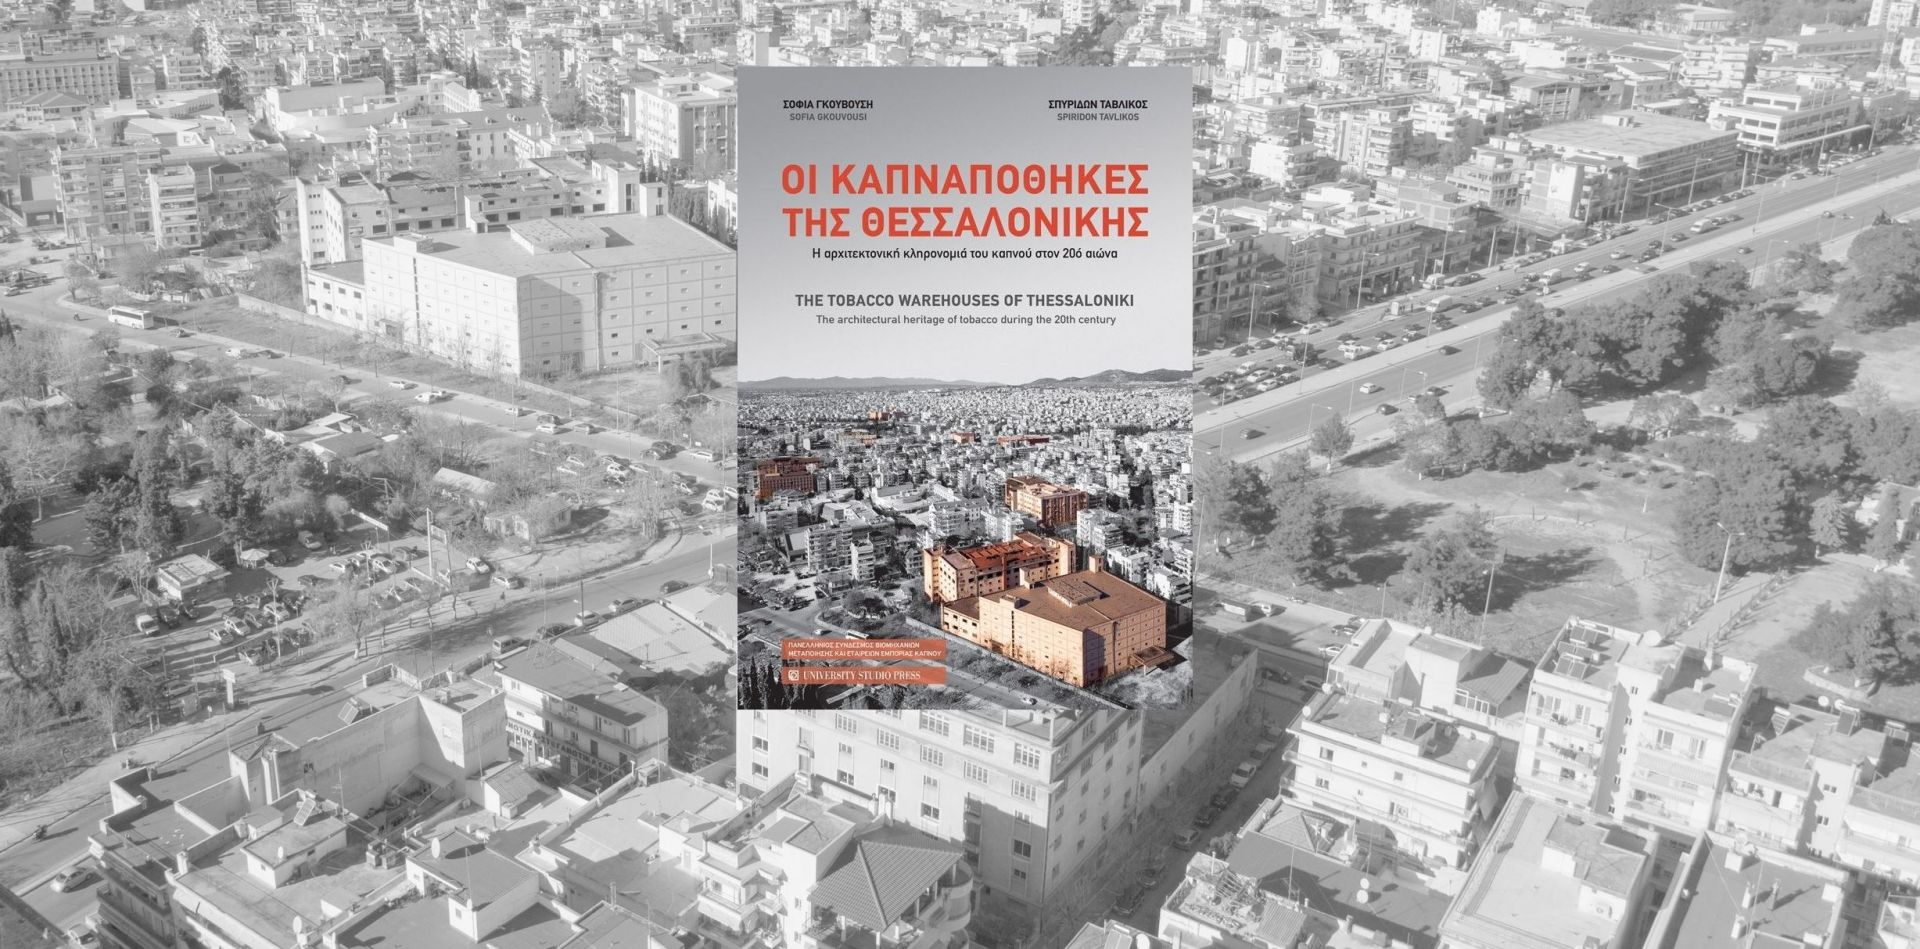 εξωφυλλο του βιβλίου για τις Καπναποθήκες της Θεσσαλονίκης με φόντο την Θεσσαλονίκη